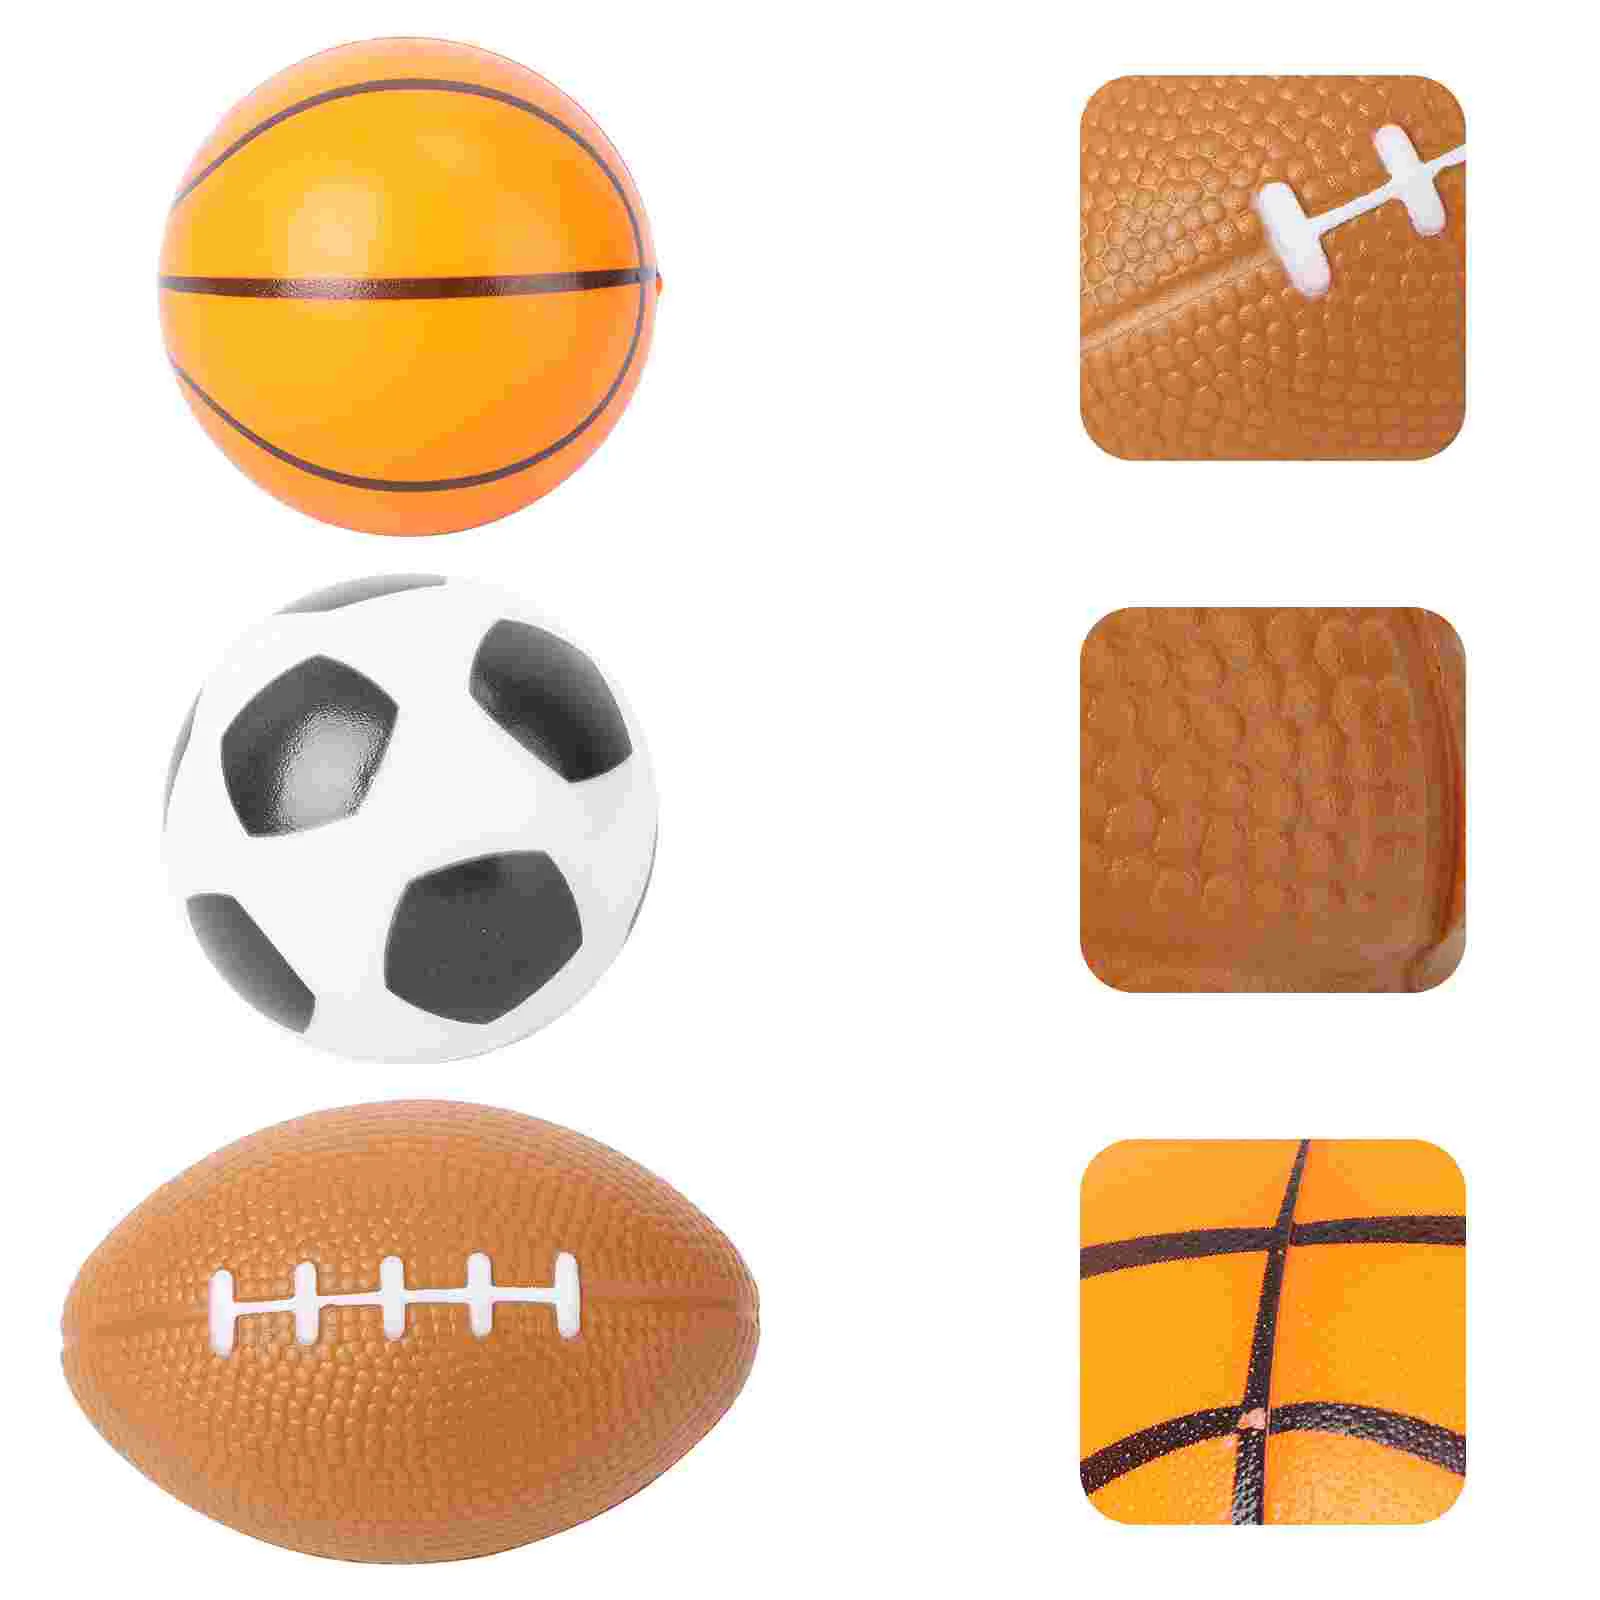 

3 шт. мягкие мини спортивные мячи для баскетбола, регби, футбольный мяч для детей